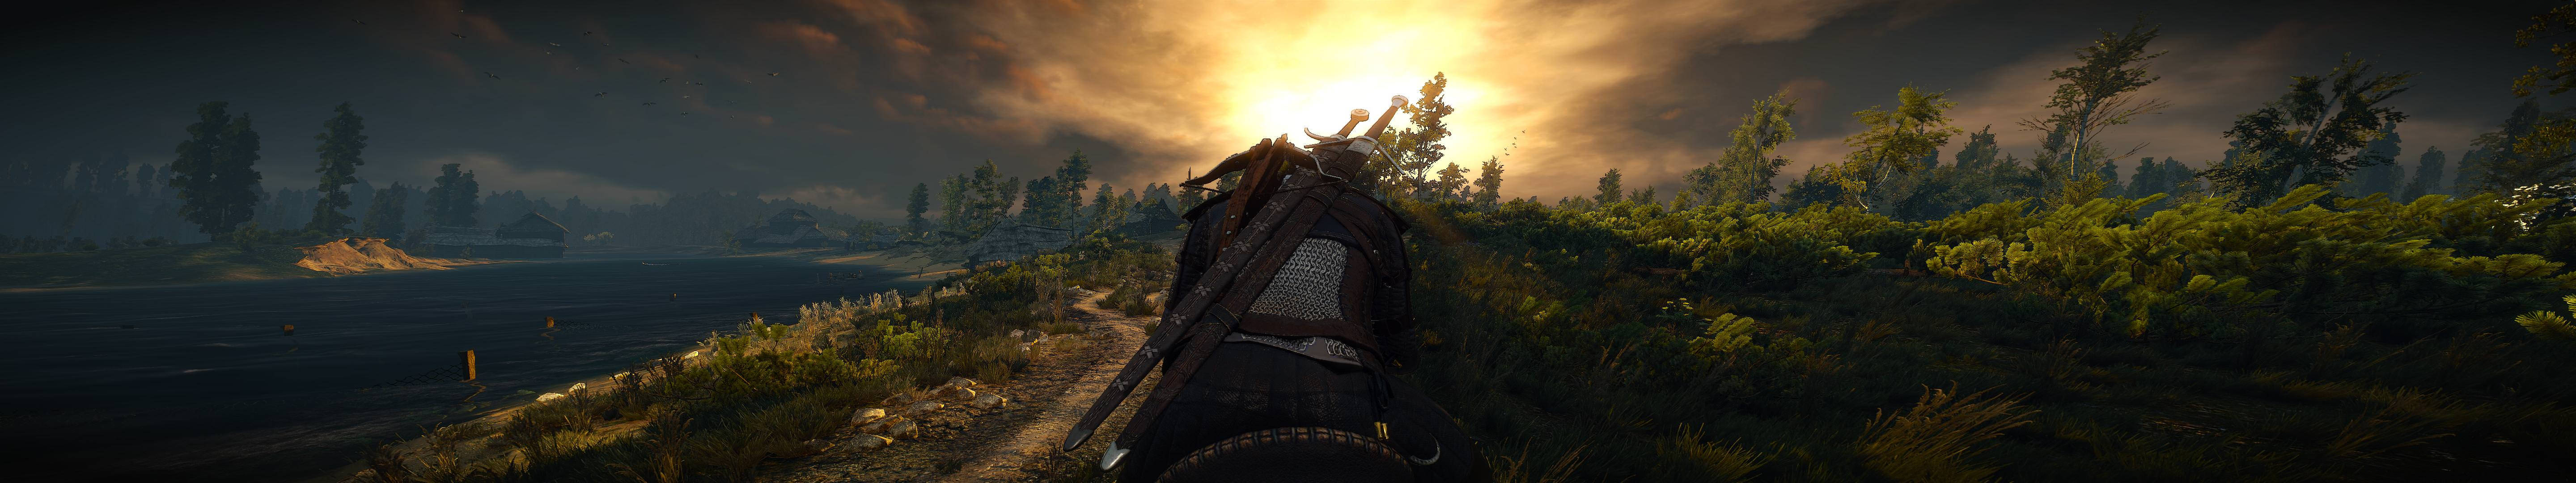 Geraltde Rivia Fica Sozinho Em Uma Floresta Adormecida Ao Pôr Do Sol, Como Plano De Fundo Para Seu Computador Ou Celular. Papel de Parede